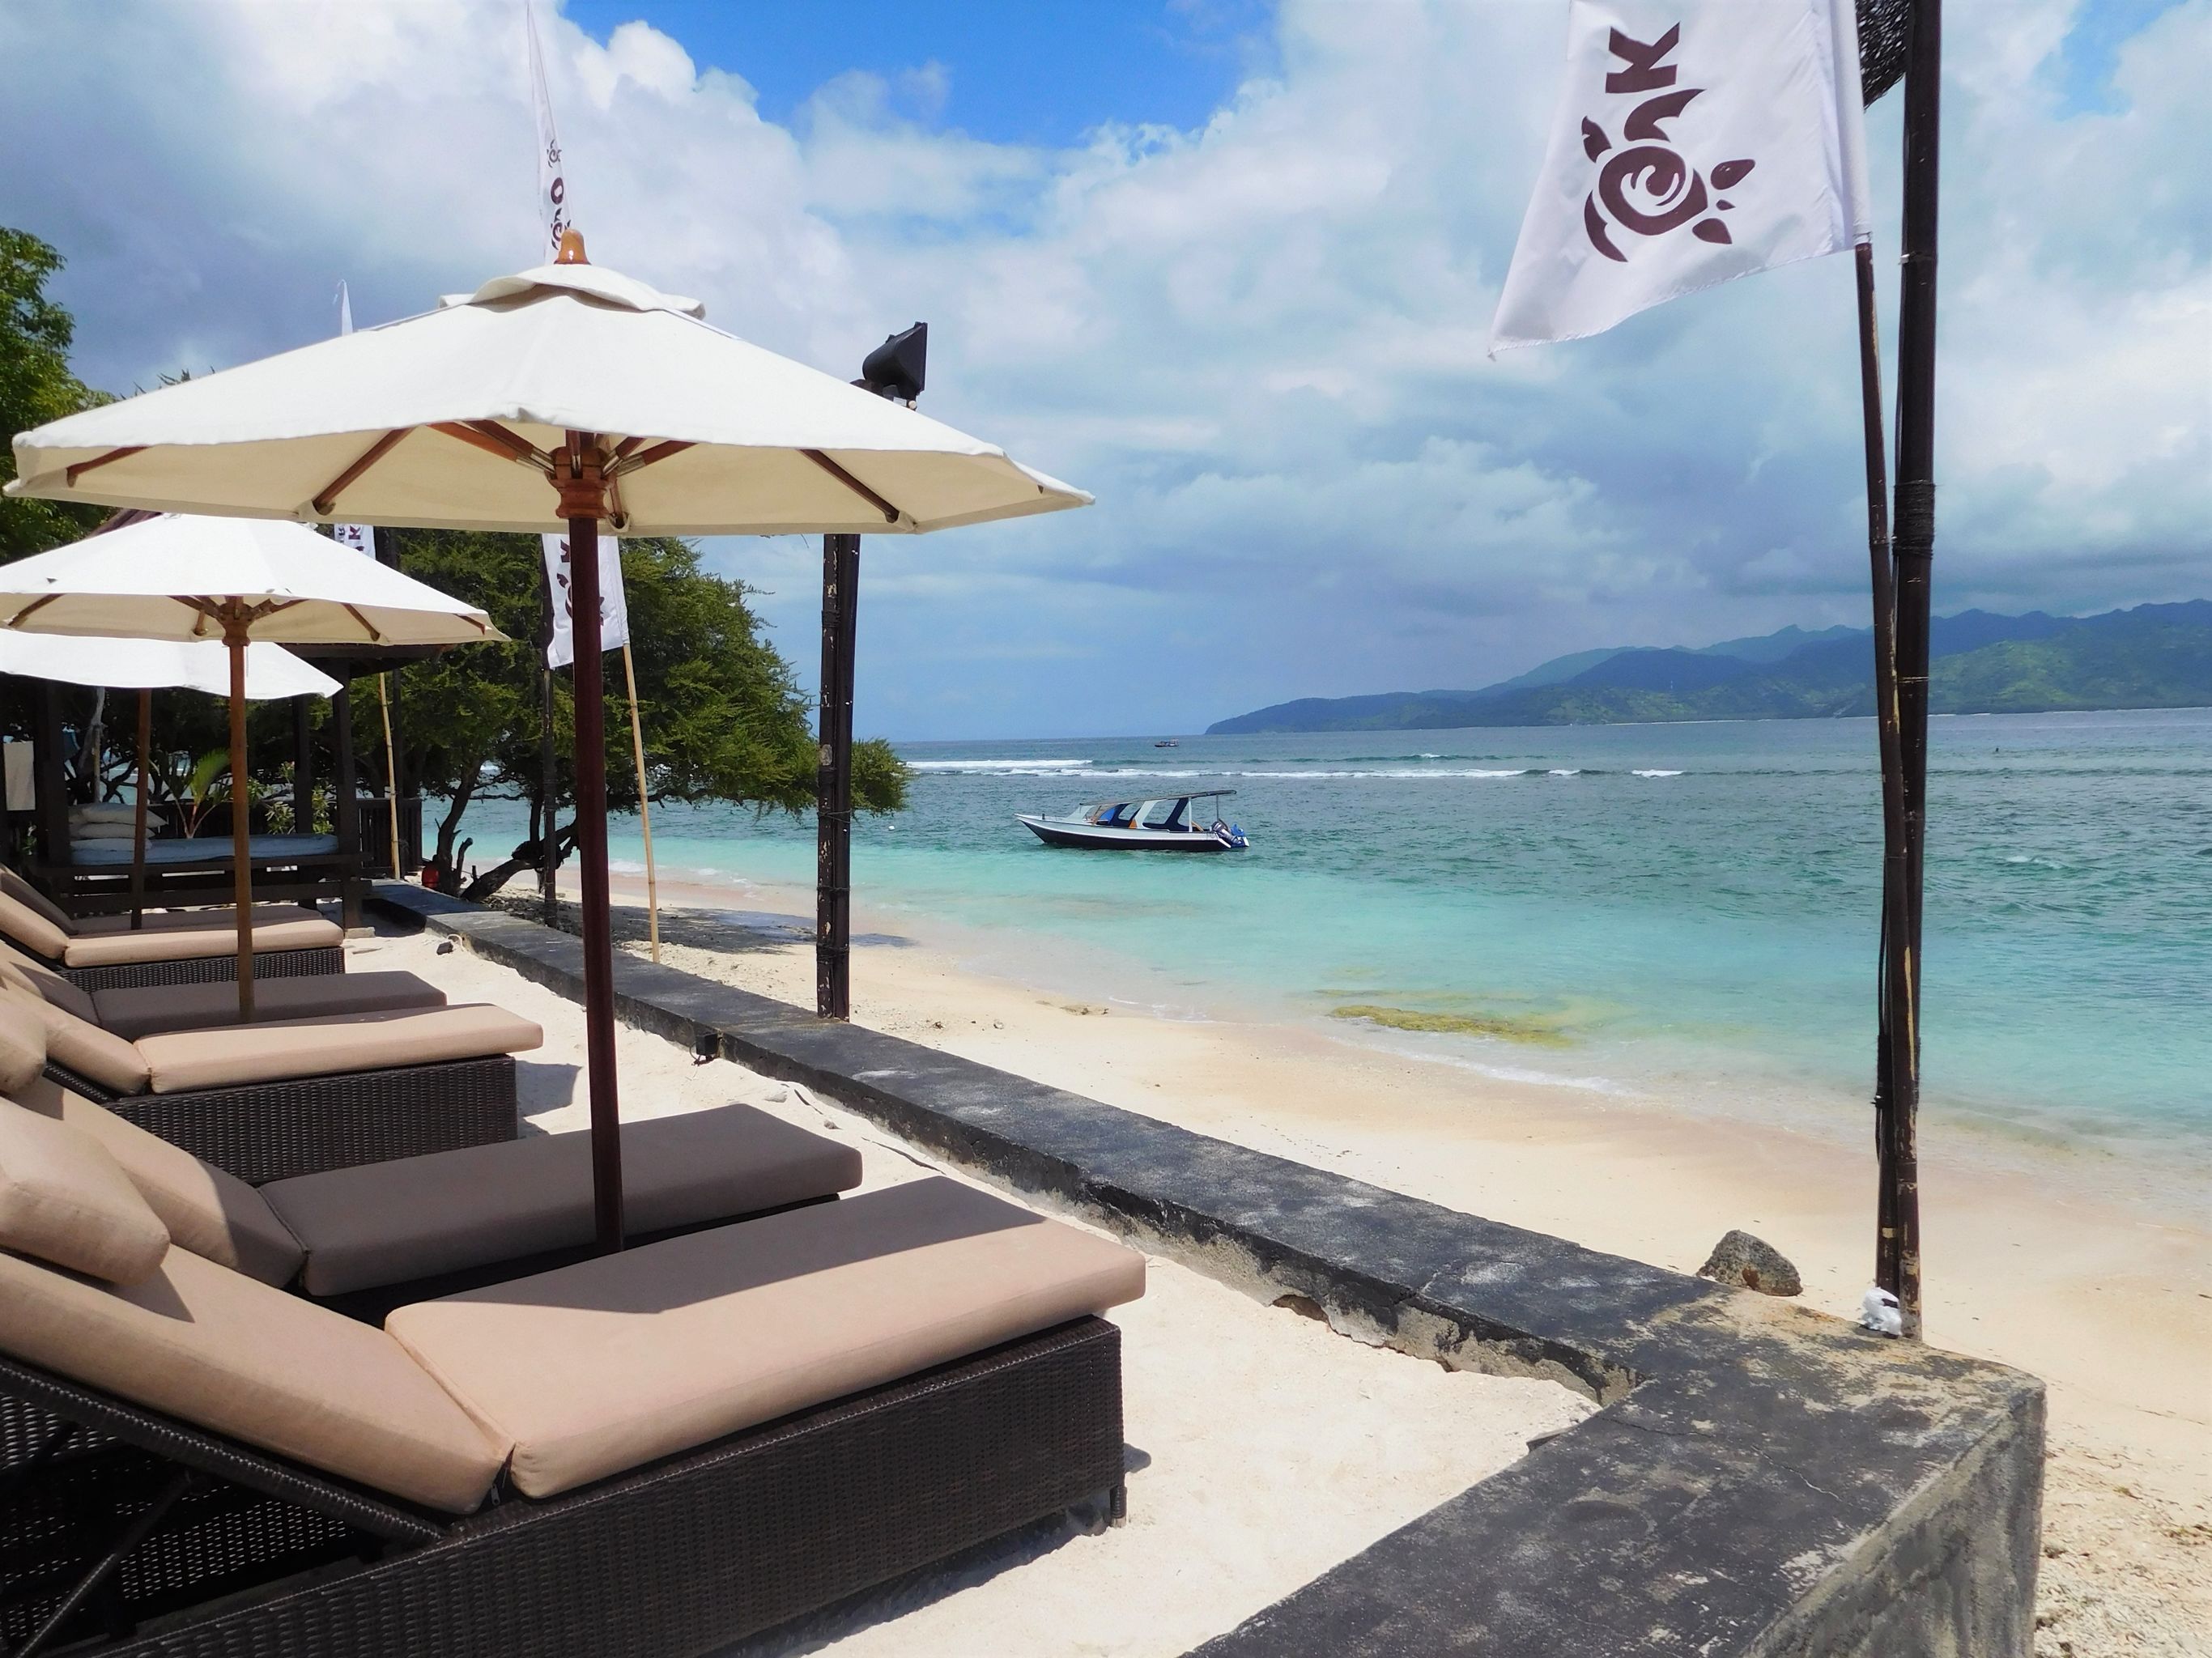 Rondreis Lombok in luxe